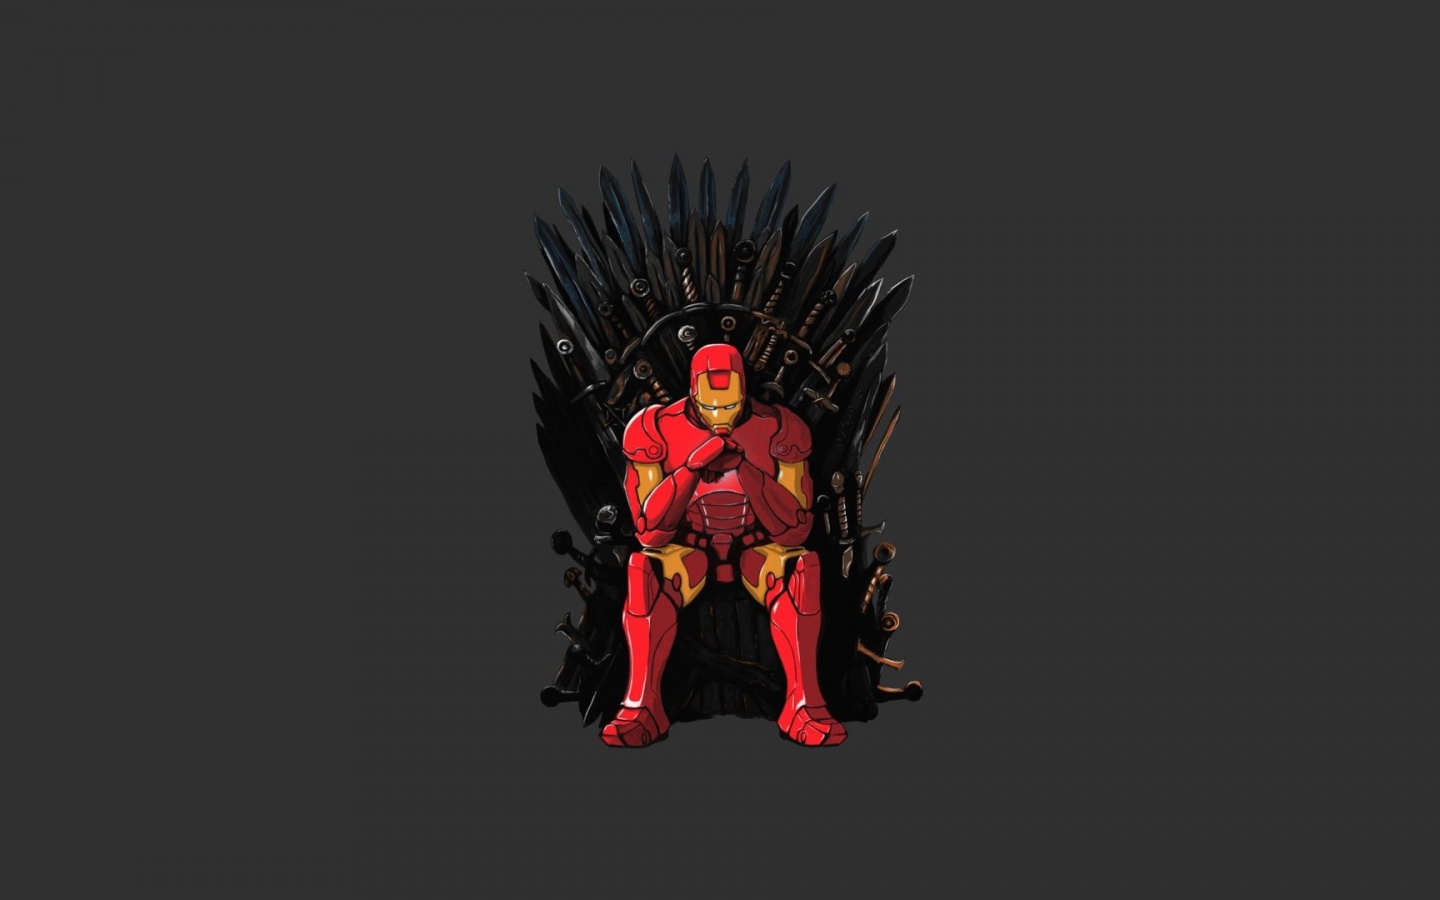 1440x900 Iron Man Game of Thrones Mashup desktop PC and Mac wallpaper